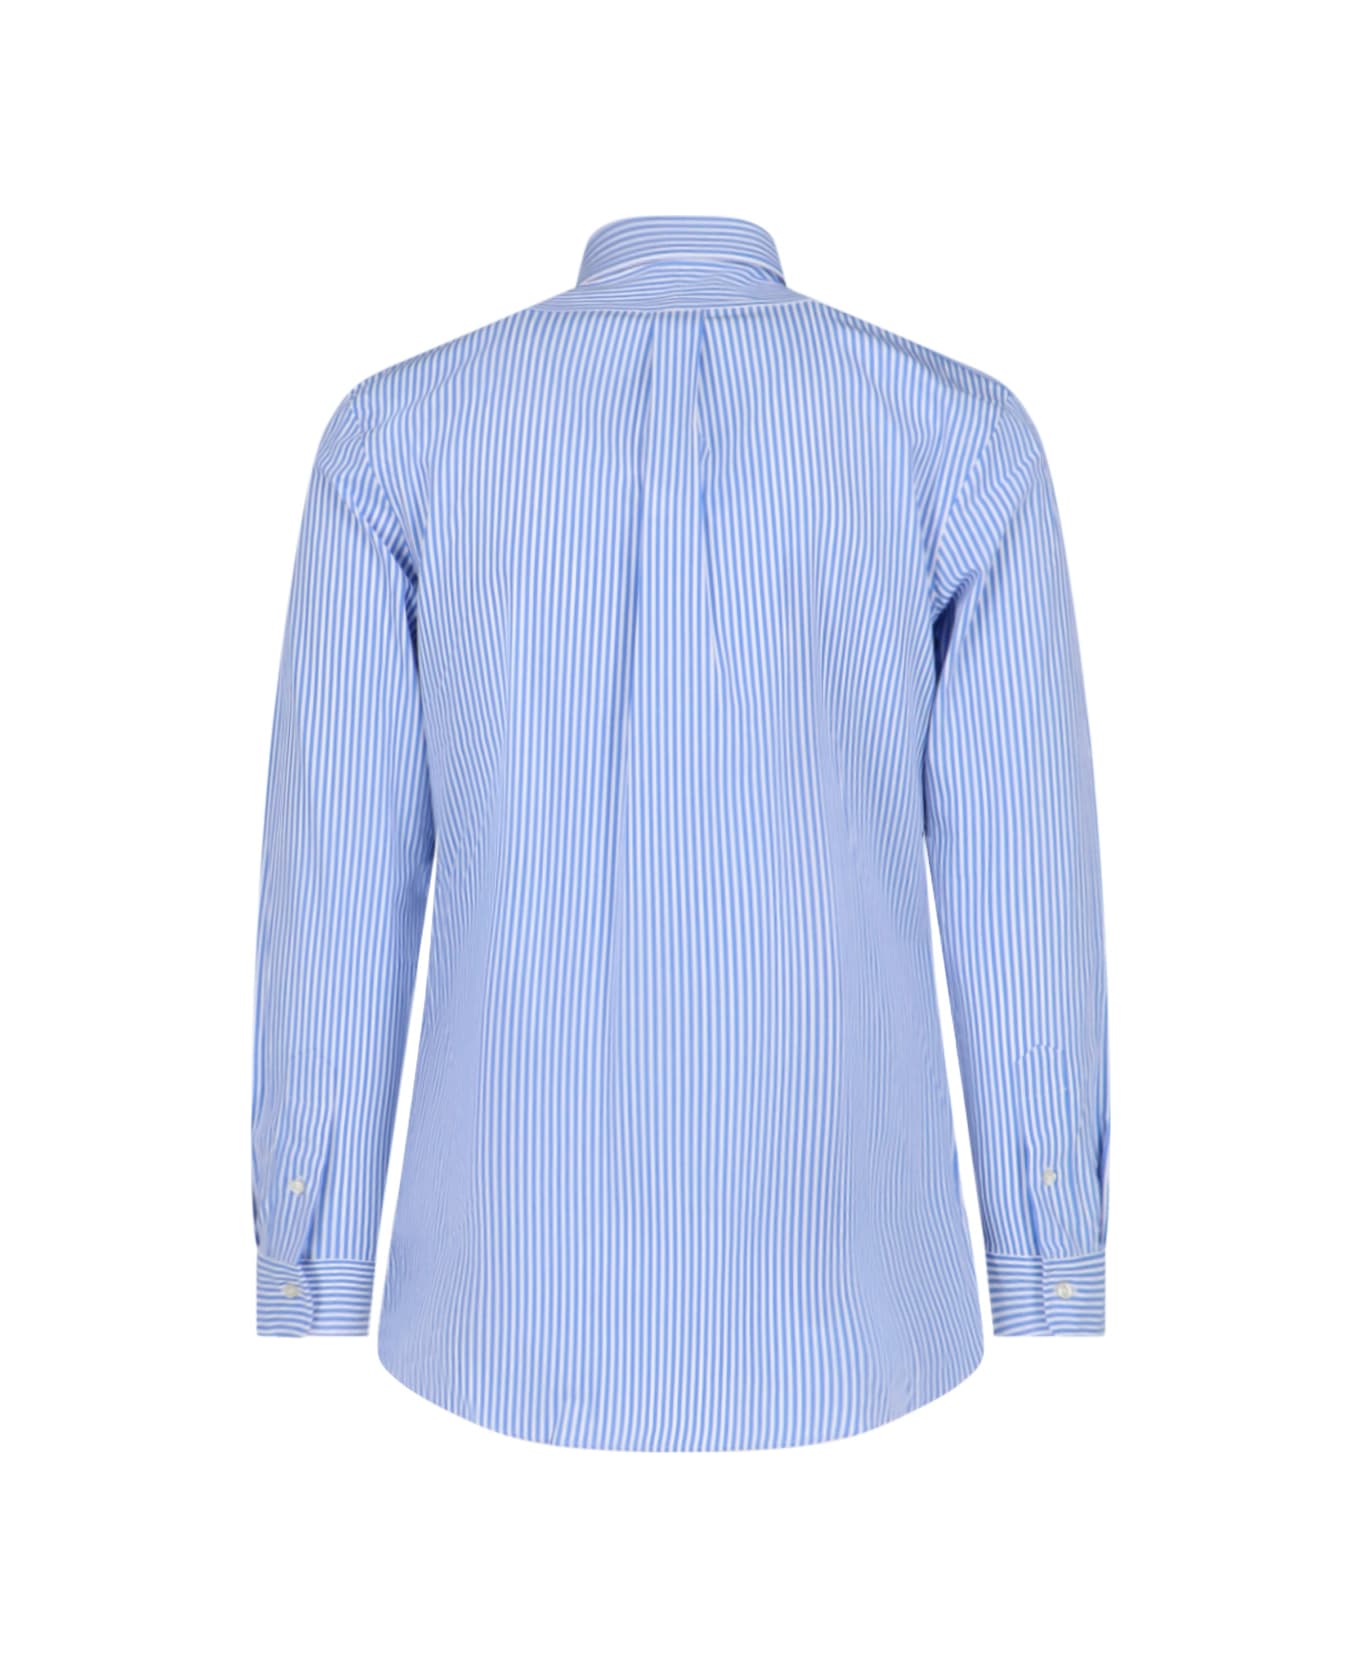 Polo Ralph Lauren Logo Striped Shirt - Light Blue